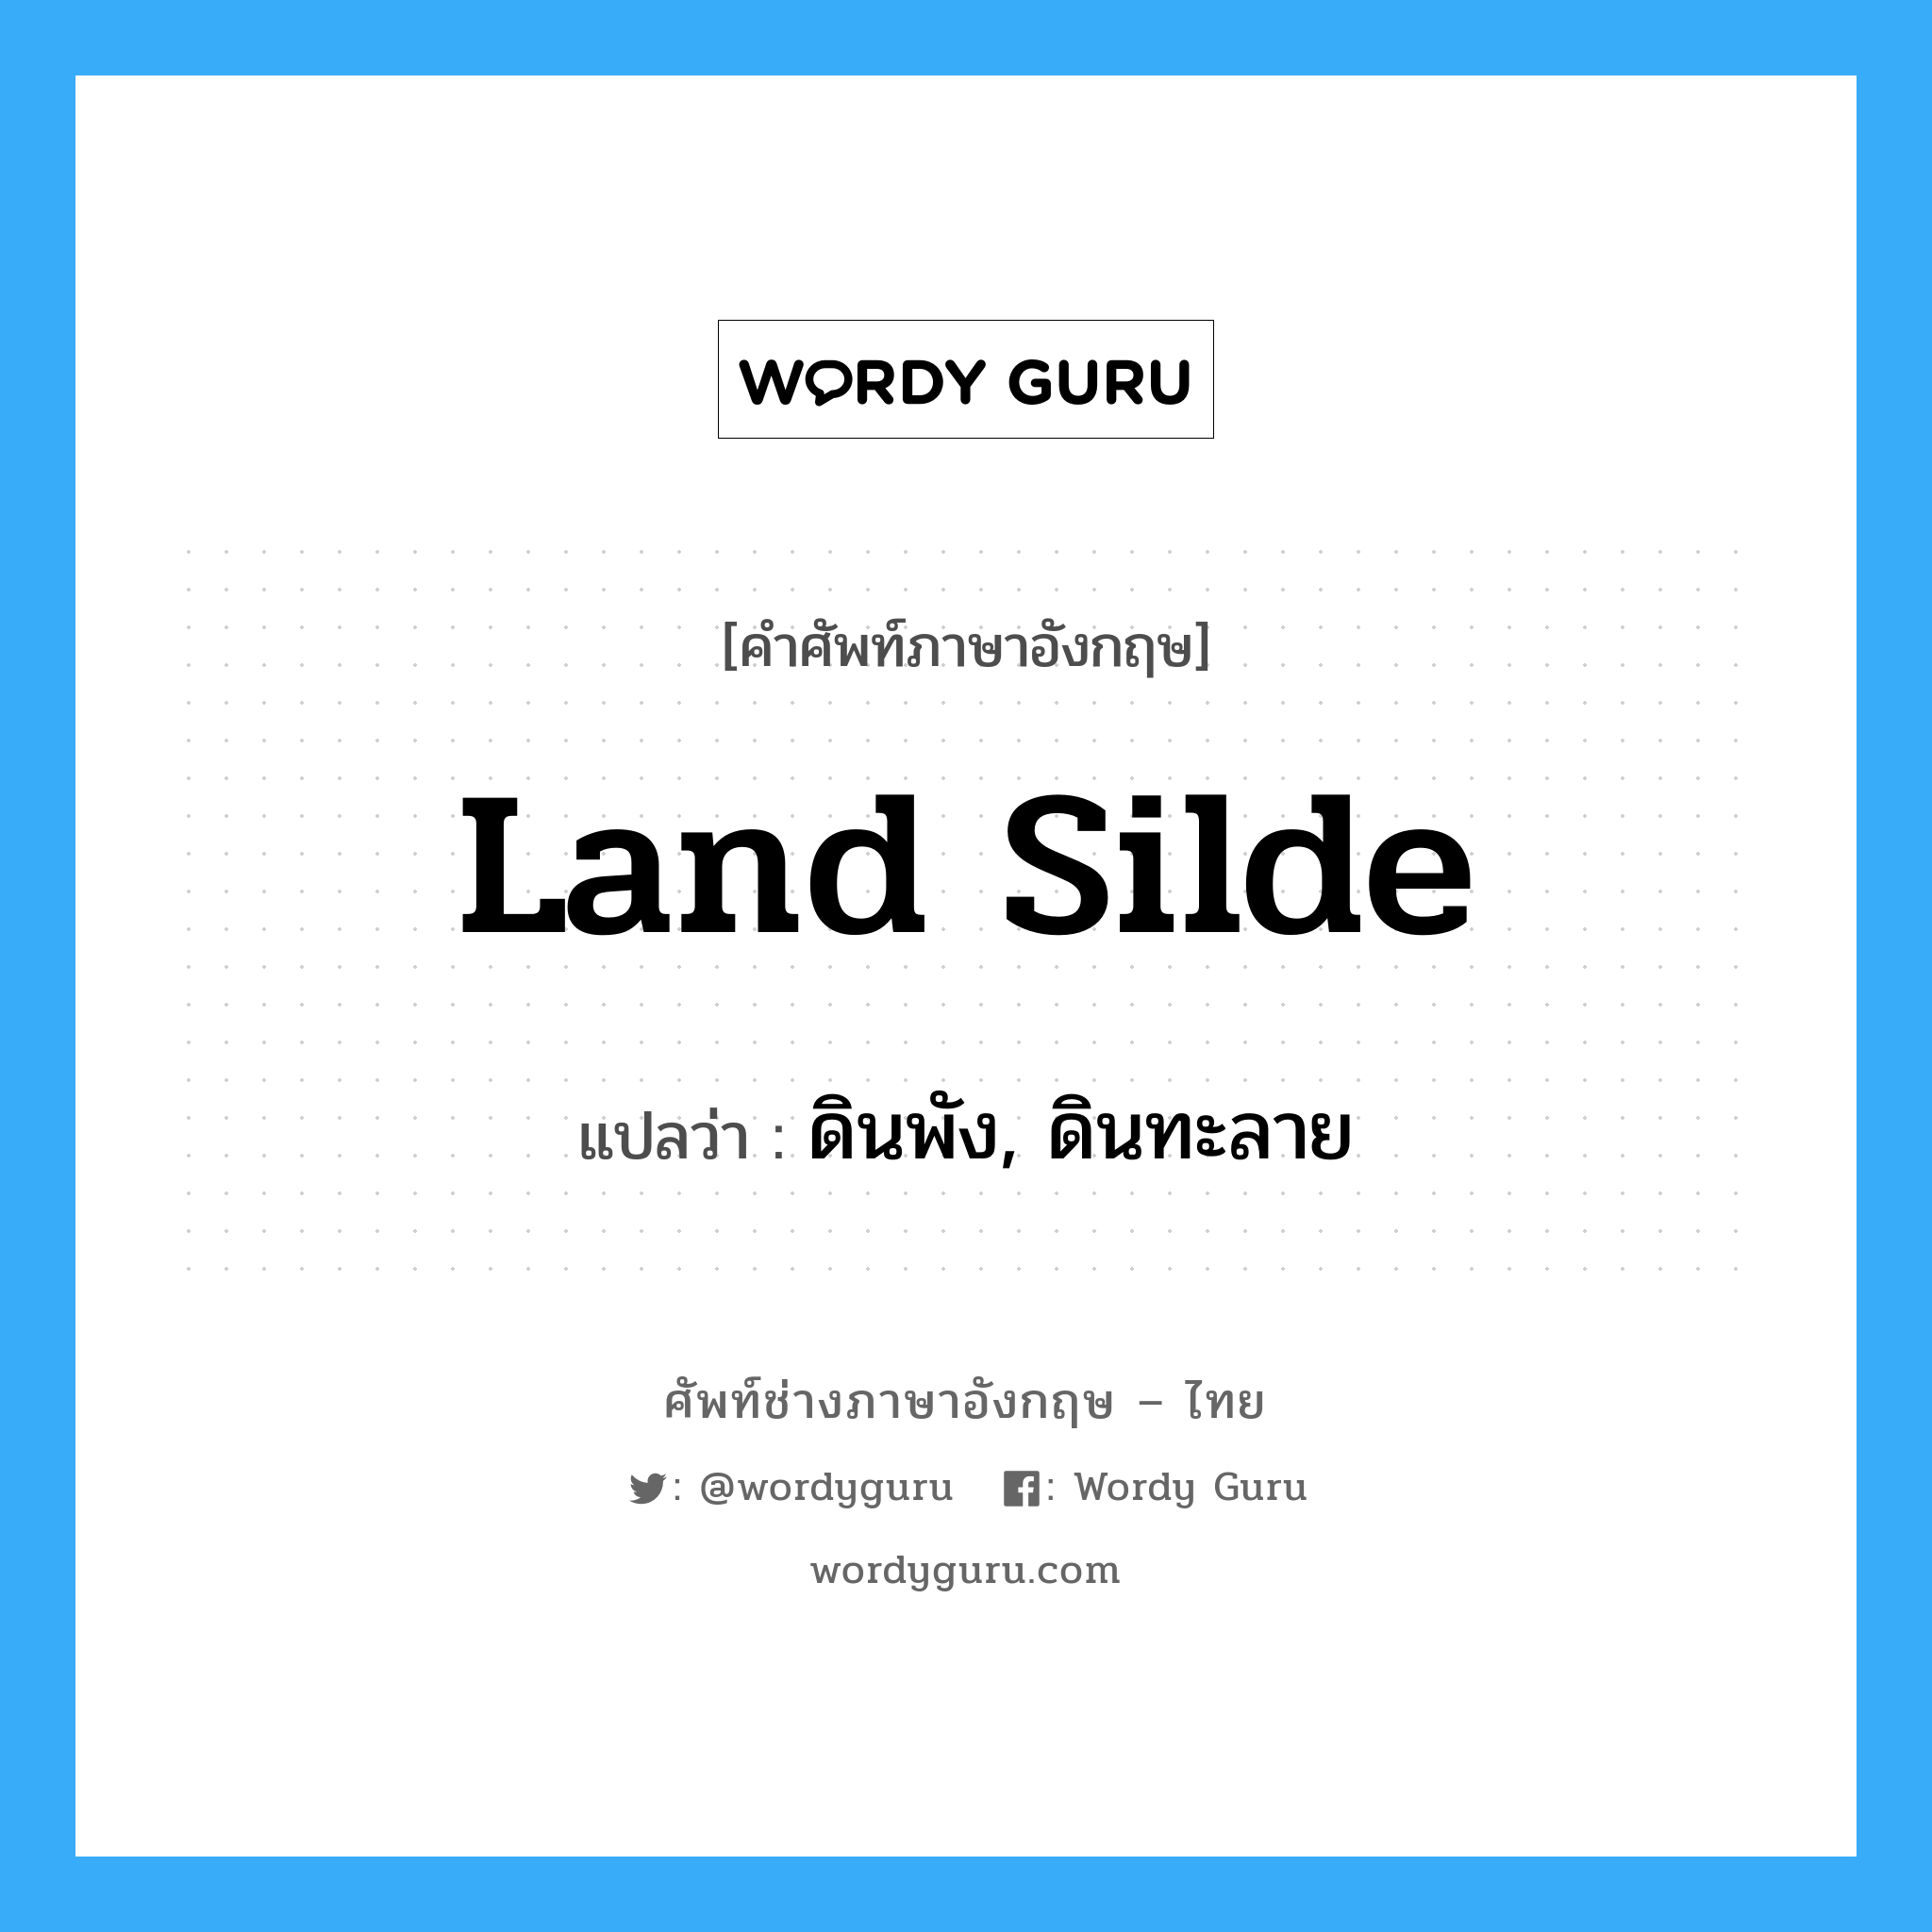 land silde แปลว่า?, คำศัพท์ช่างภาษาอังกฤษ - ไทย land silde คำศัพท์ภาษาอังกฤษ land silde แปลว่า ดินพัง, ดินทะลาย